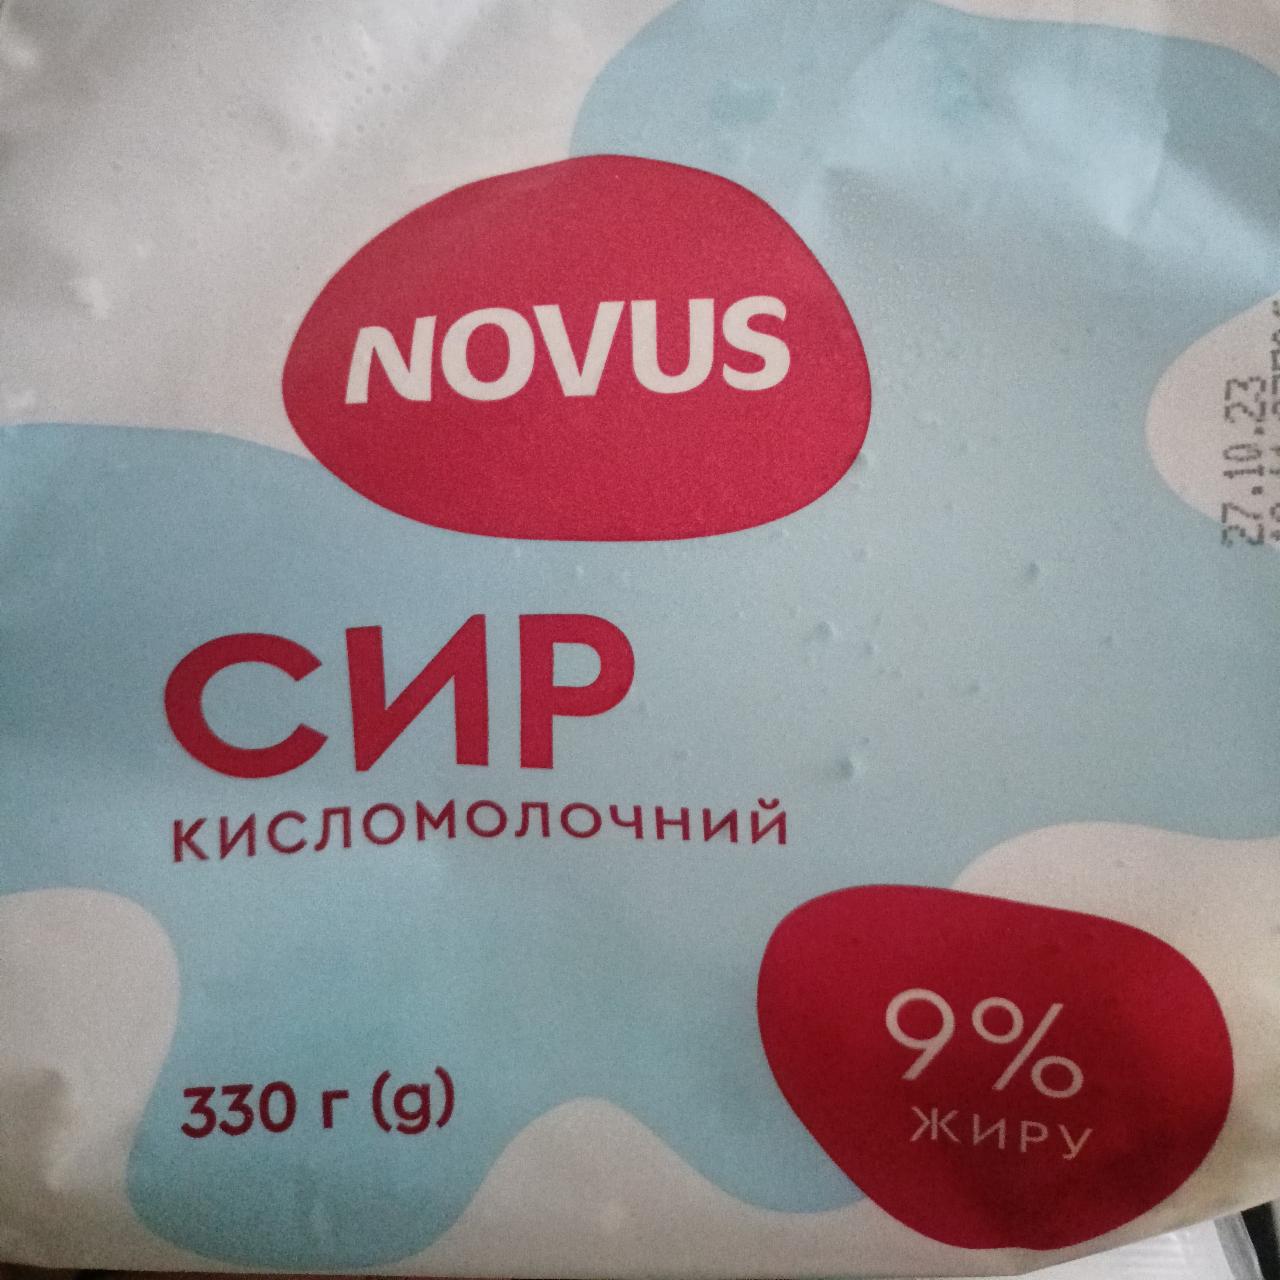 Фото - Сир кисломолочний 9% Novus